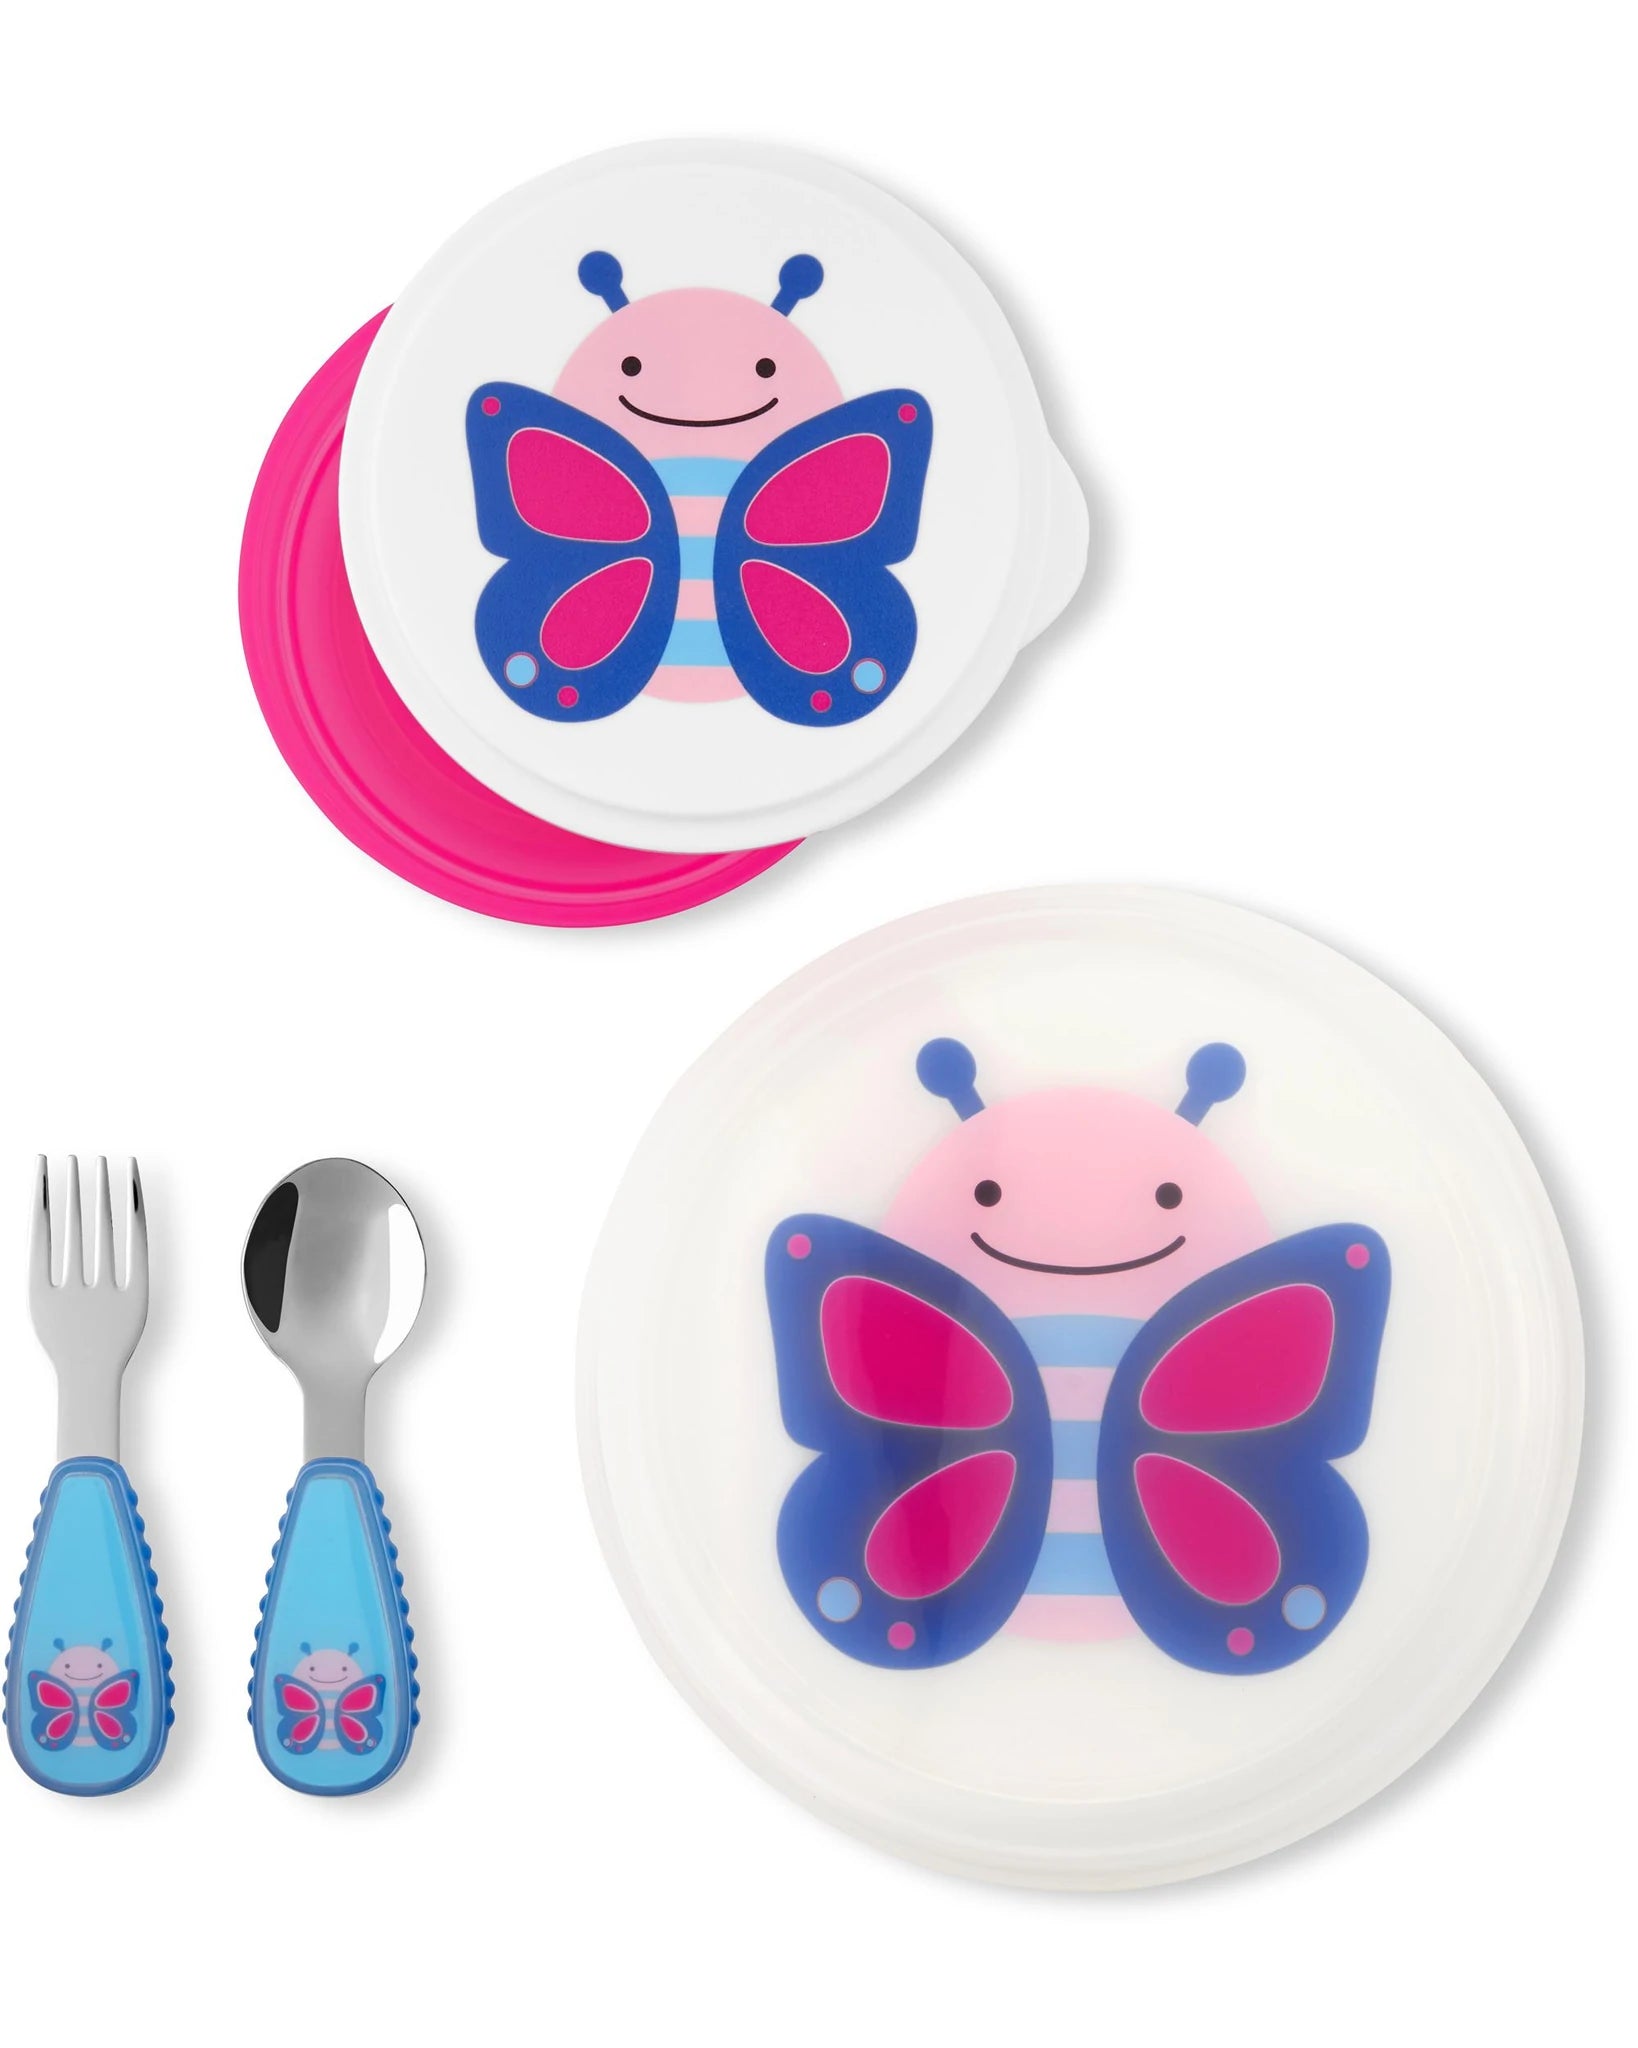 ZOO Table Ready Mealtime Set - Butterfly - BambiniJO | Buy Online | Jordan